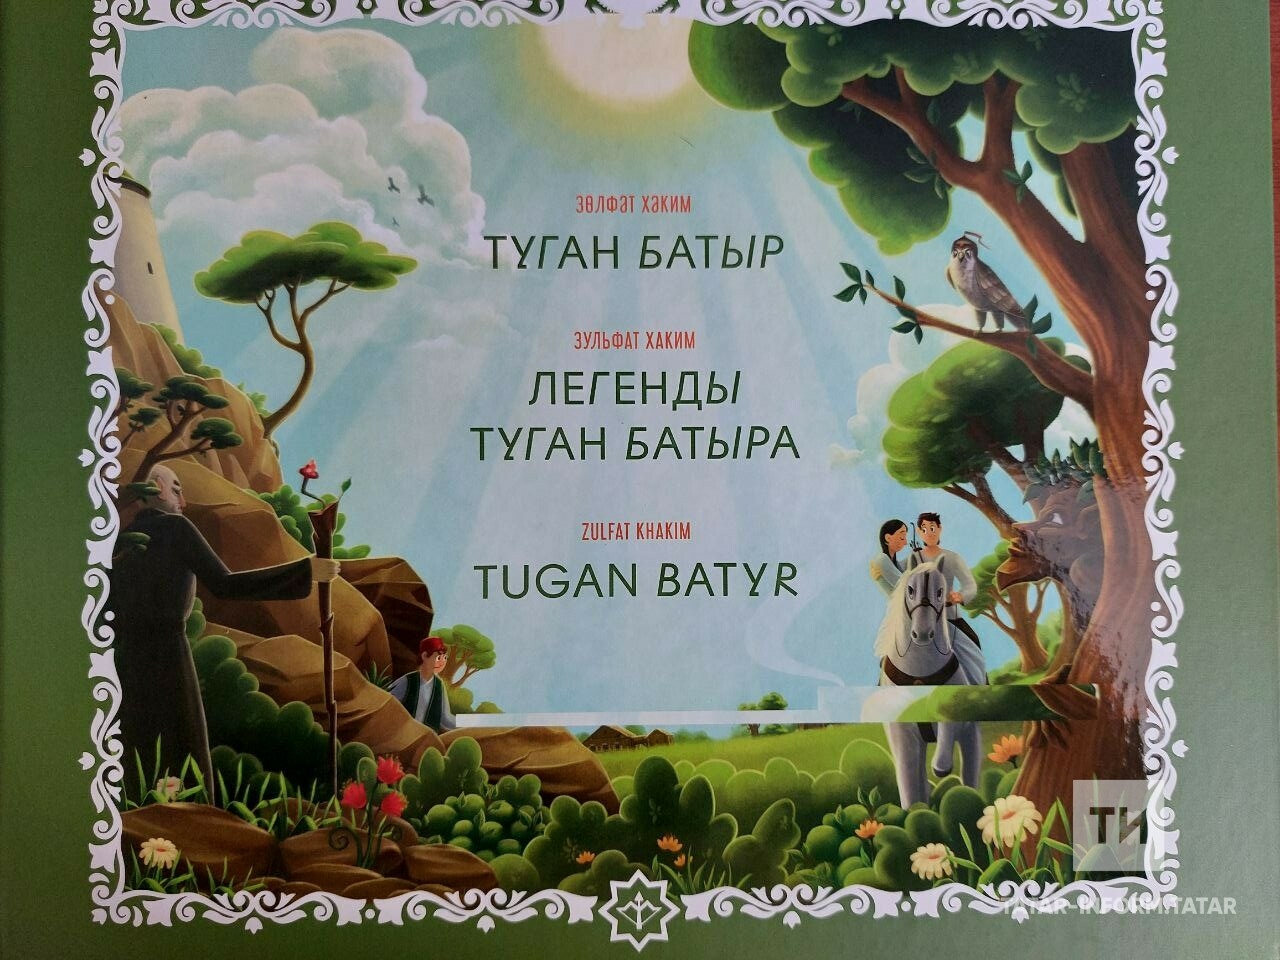 Татар балалары өчен яңа татар герое – Туган батыр барлыкка килде